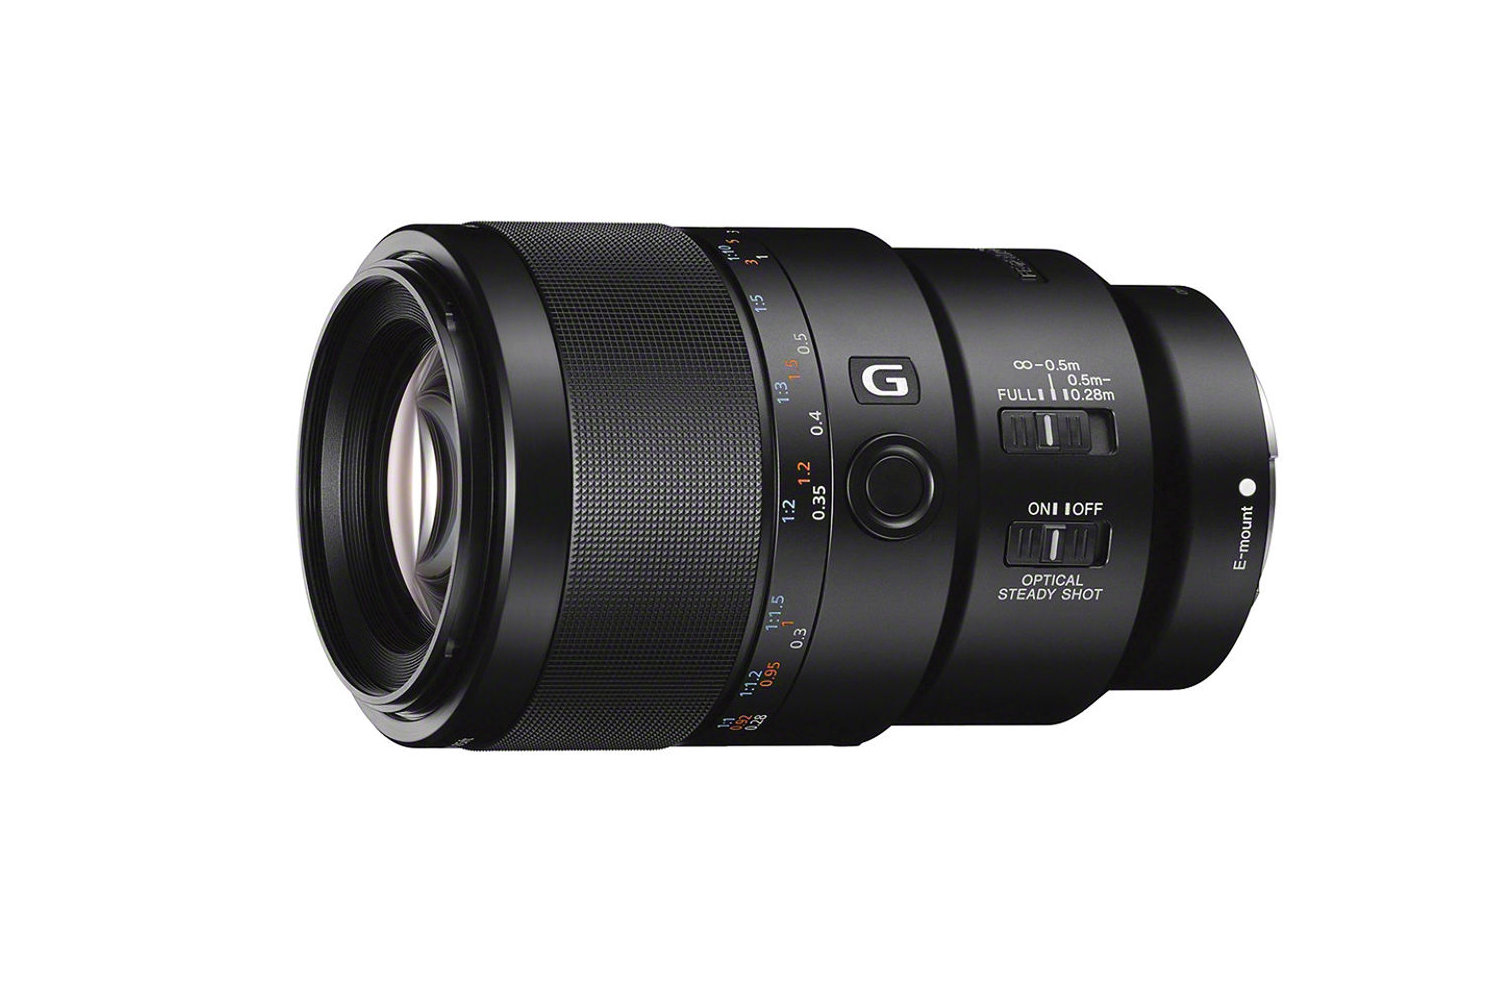 Best Sony lens: Sony FE 90mm f/2.8 Macro G OSS